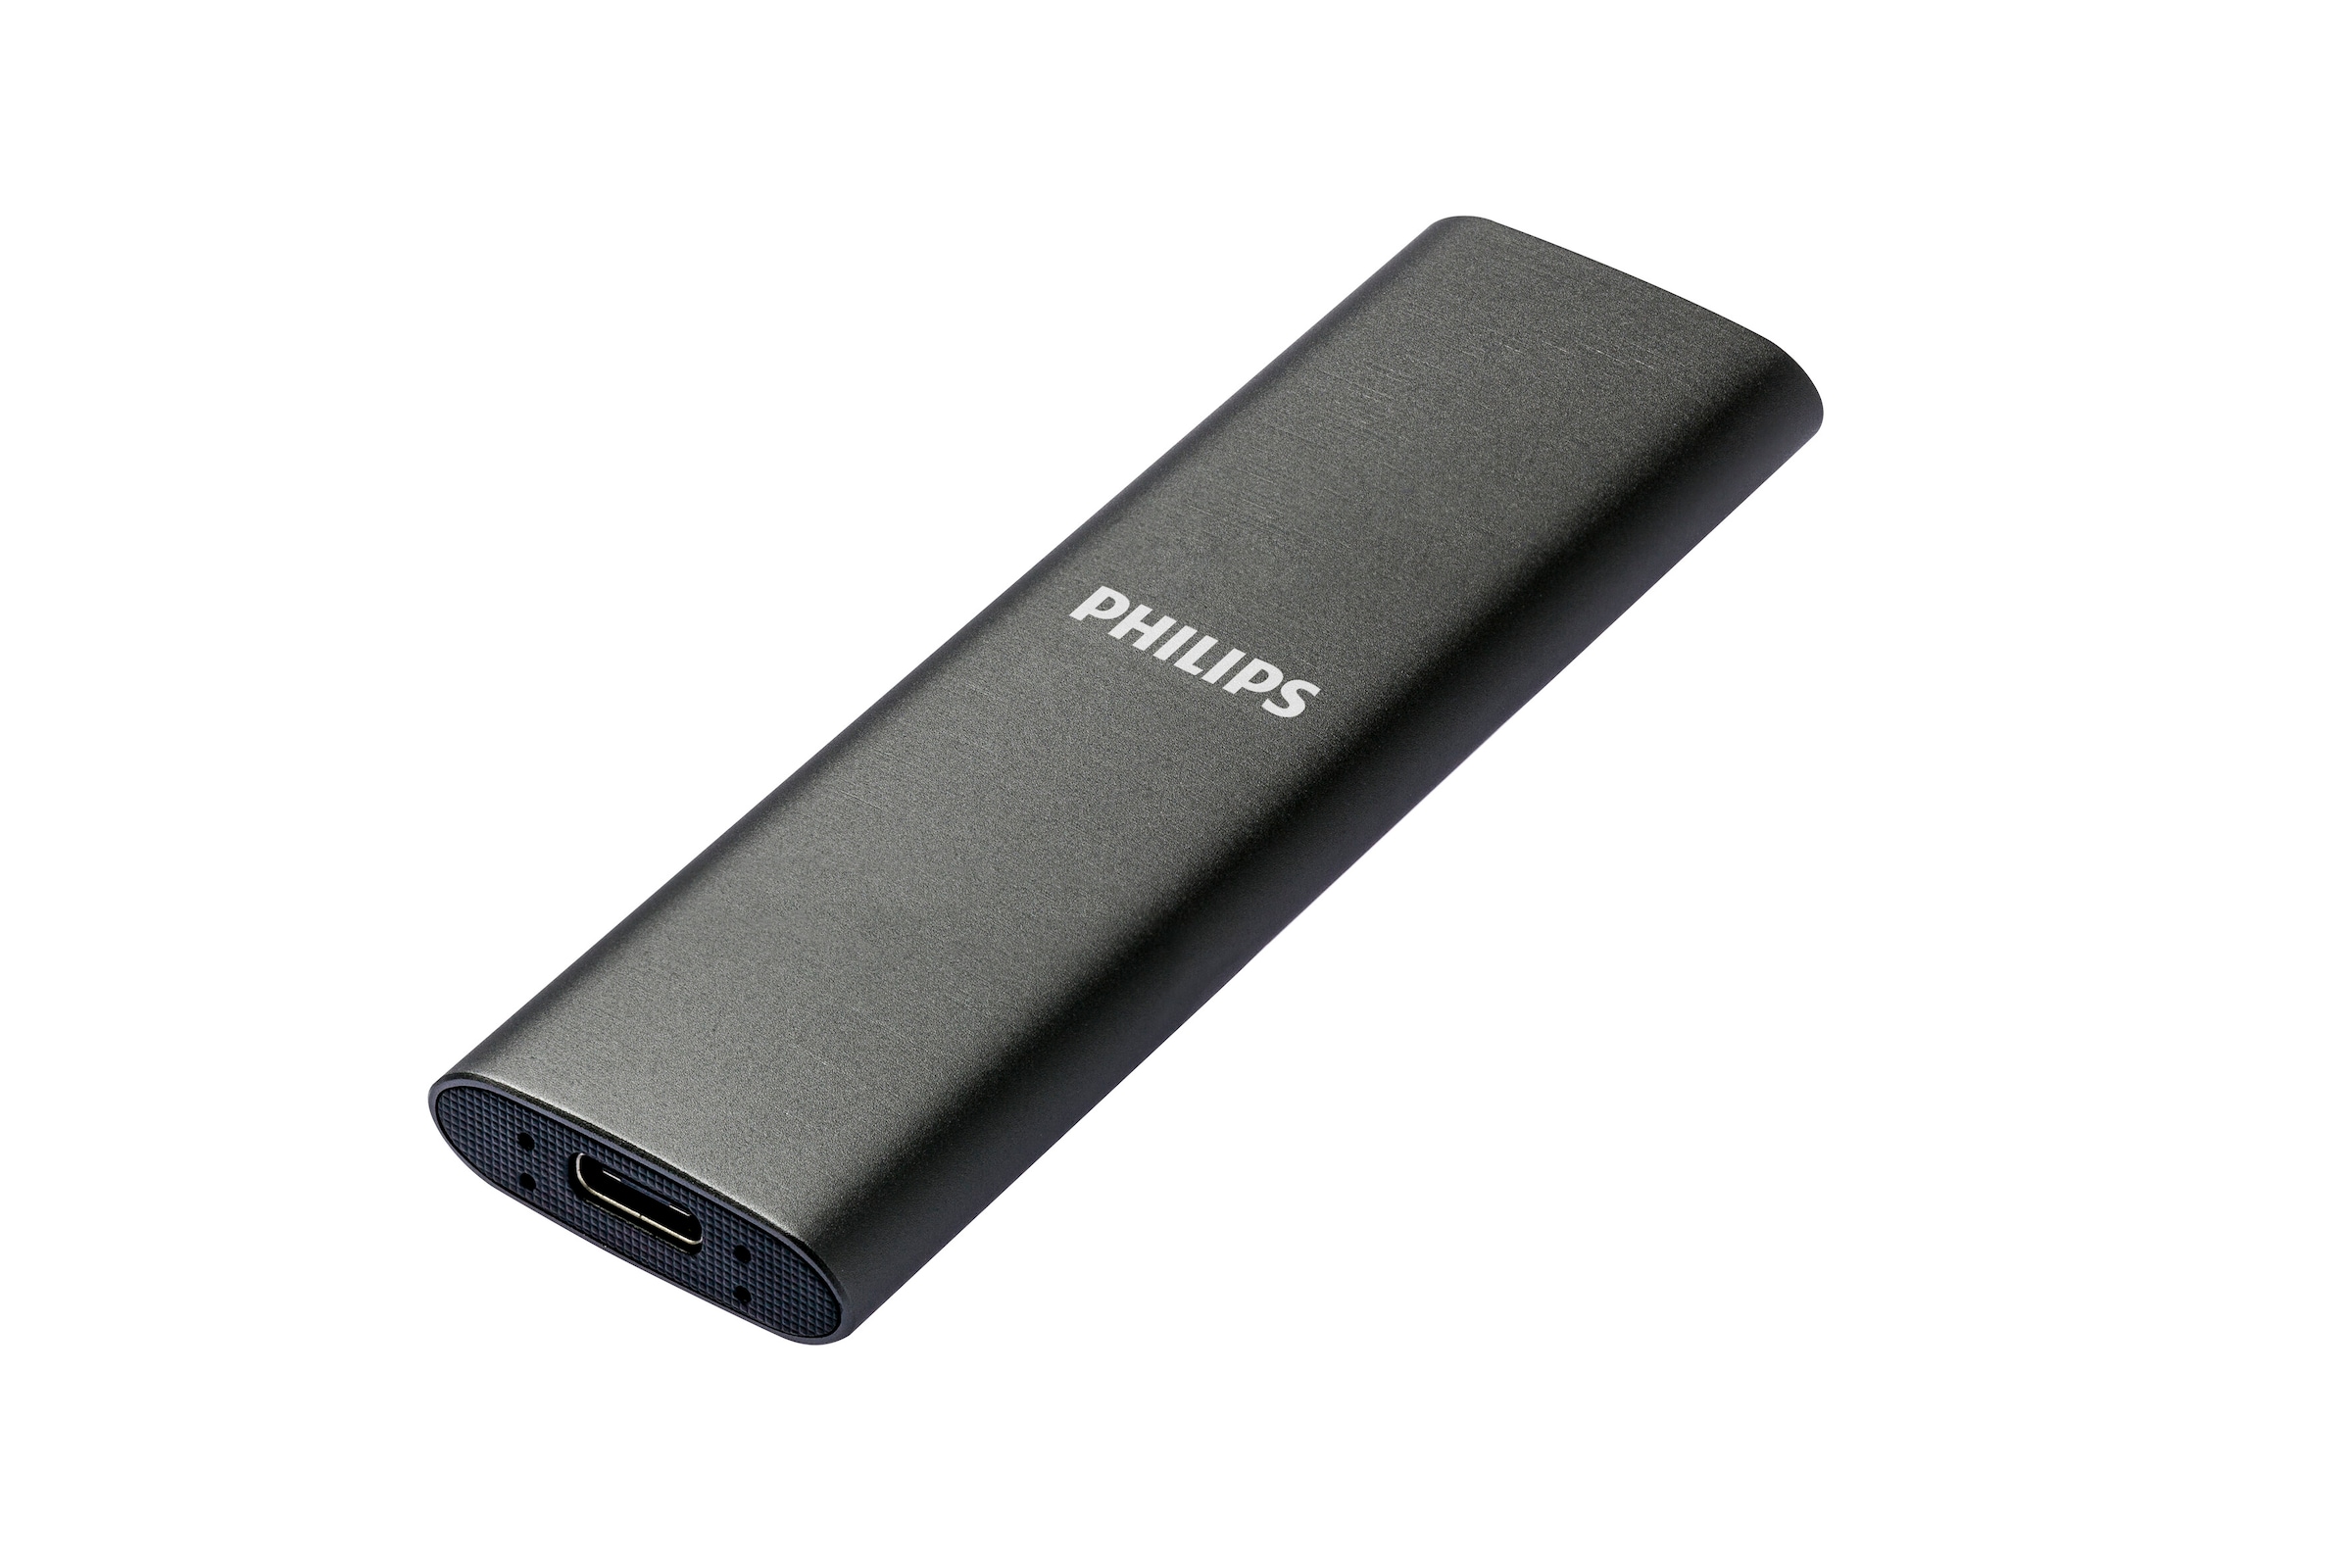 Philips externe SSD »External SSD 500GB«, Anschluss USB-C, Ultra Speed